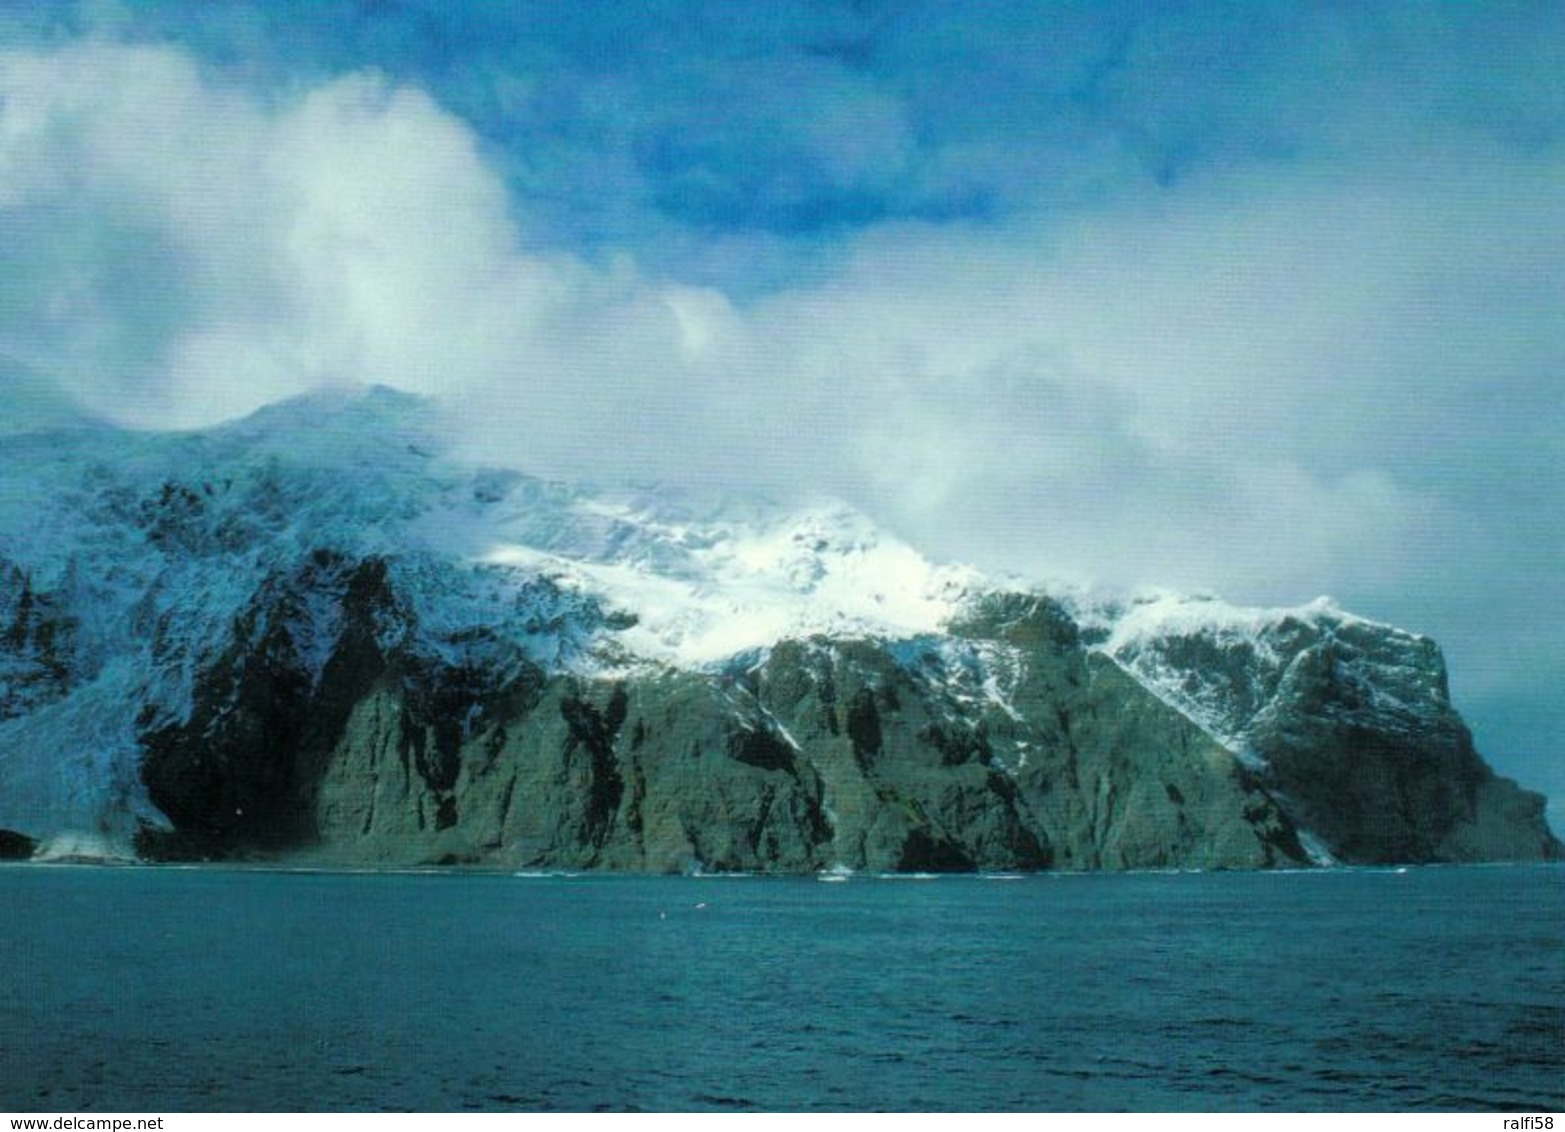 1 AK Bouvet Island * South Atlantic Ocean - Insel Im Südatlantik Und Ein Abhängiges Gebiet Von Norwegen - Norway * - Norwegen